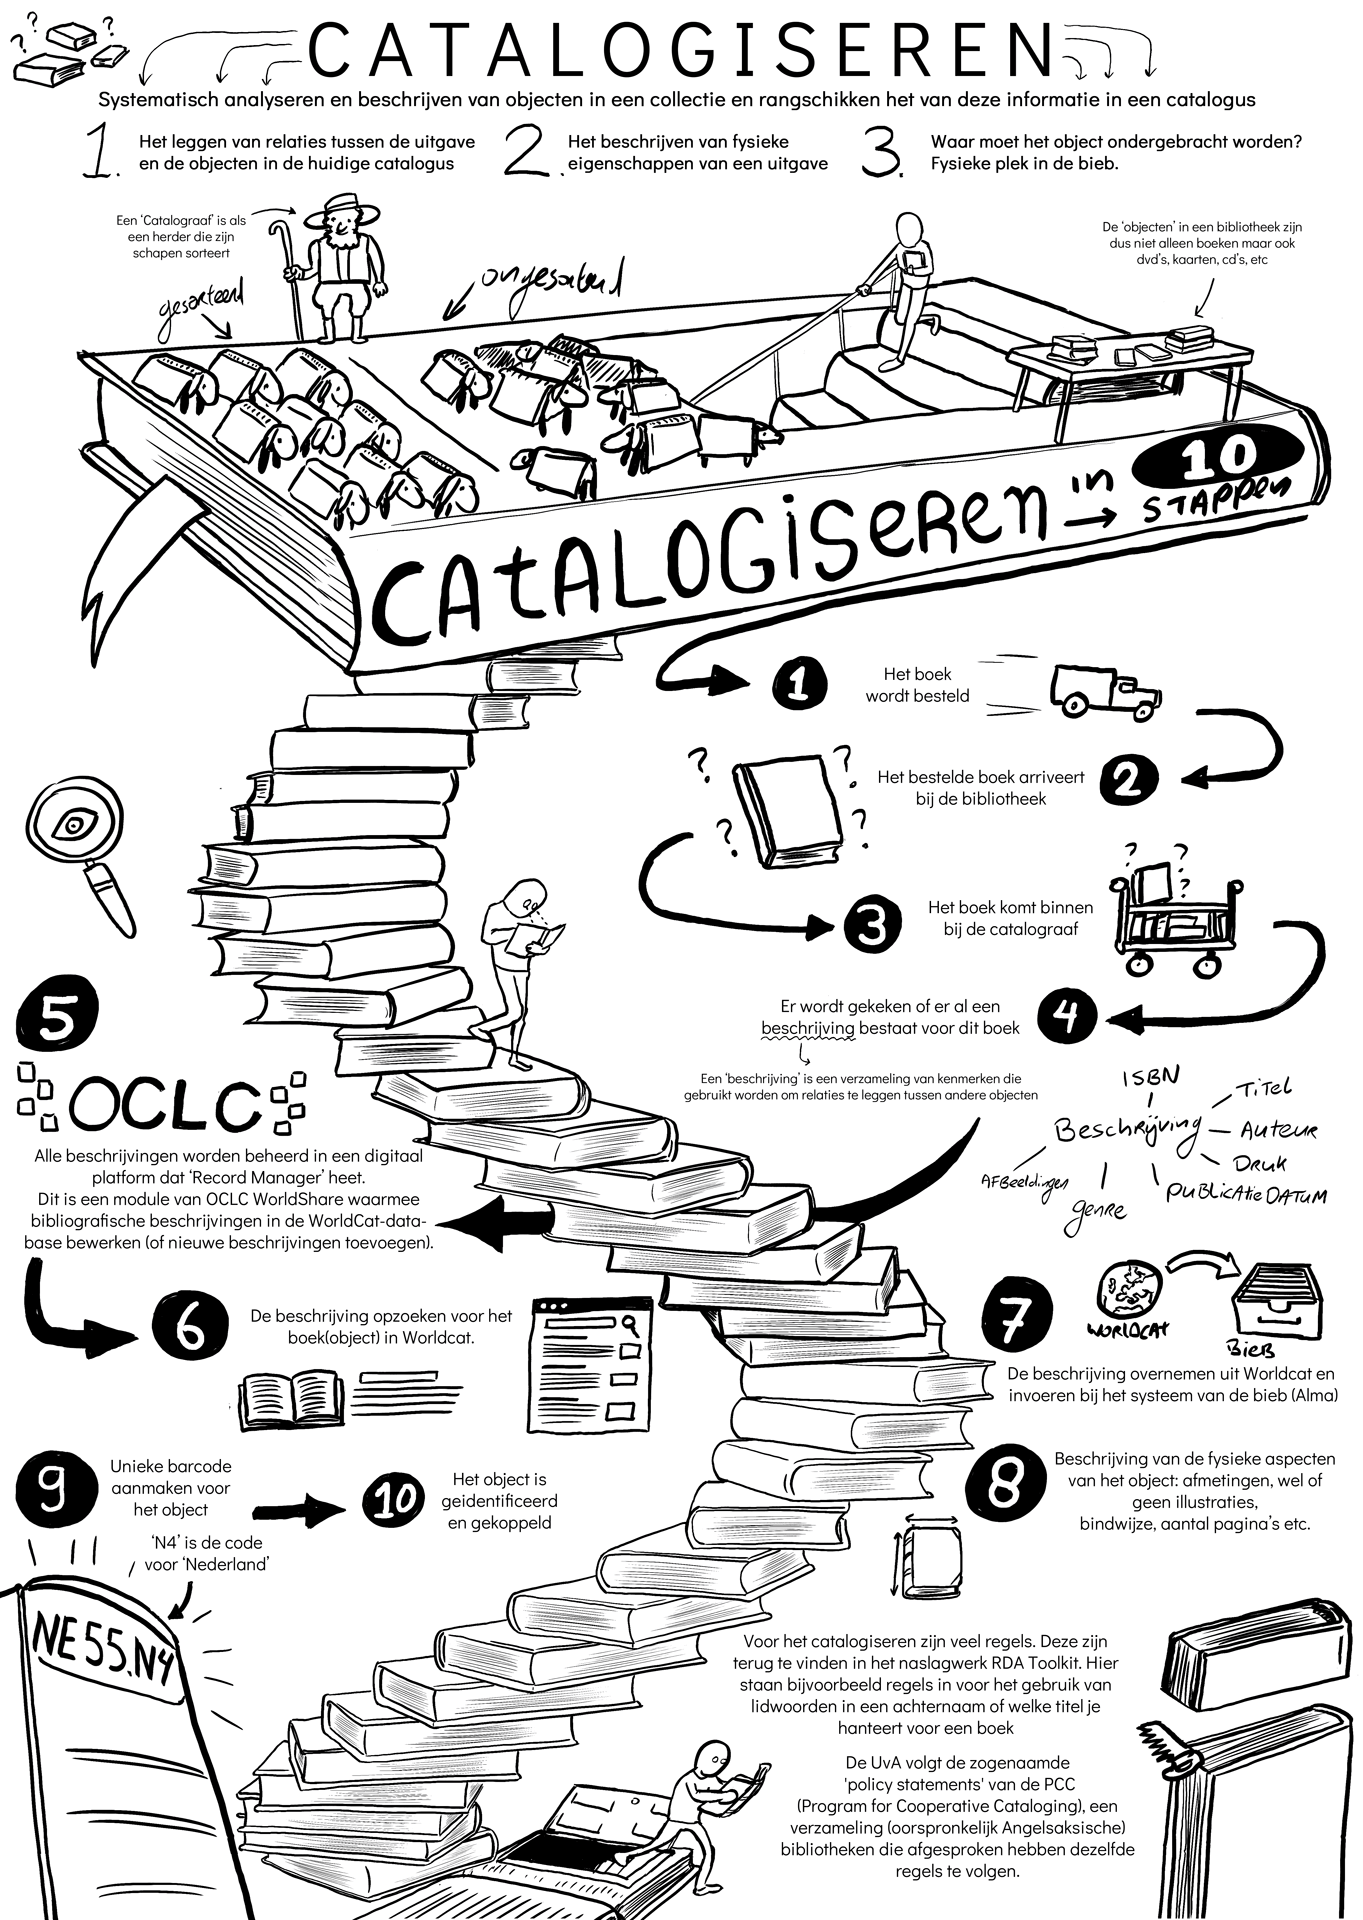 infographic-uva-amsterdam-catalogiseren-bibliotheek-jacco-de-jager